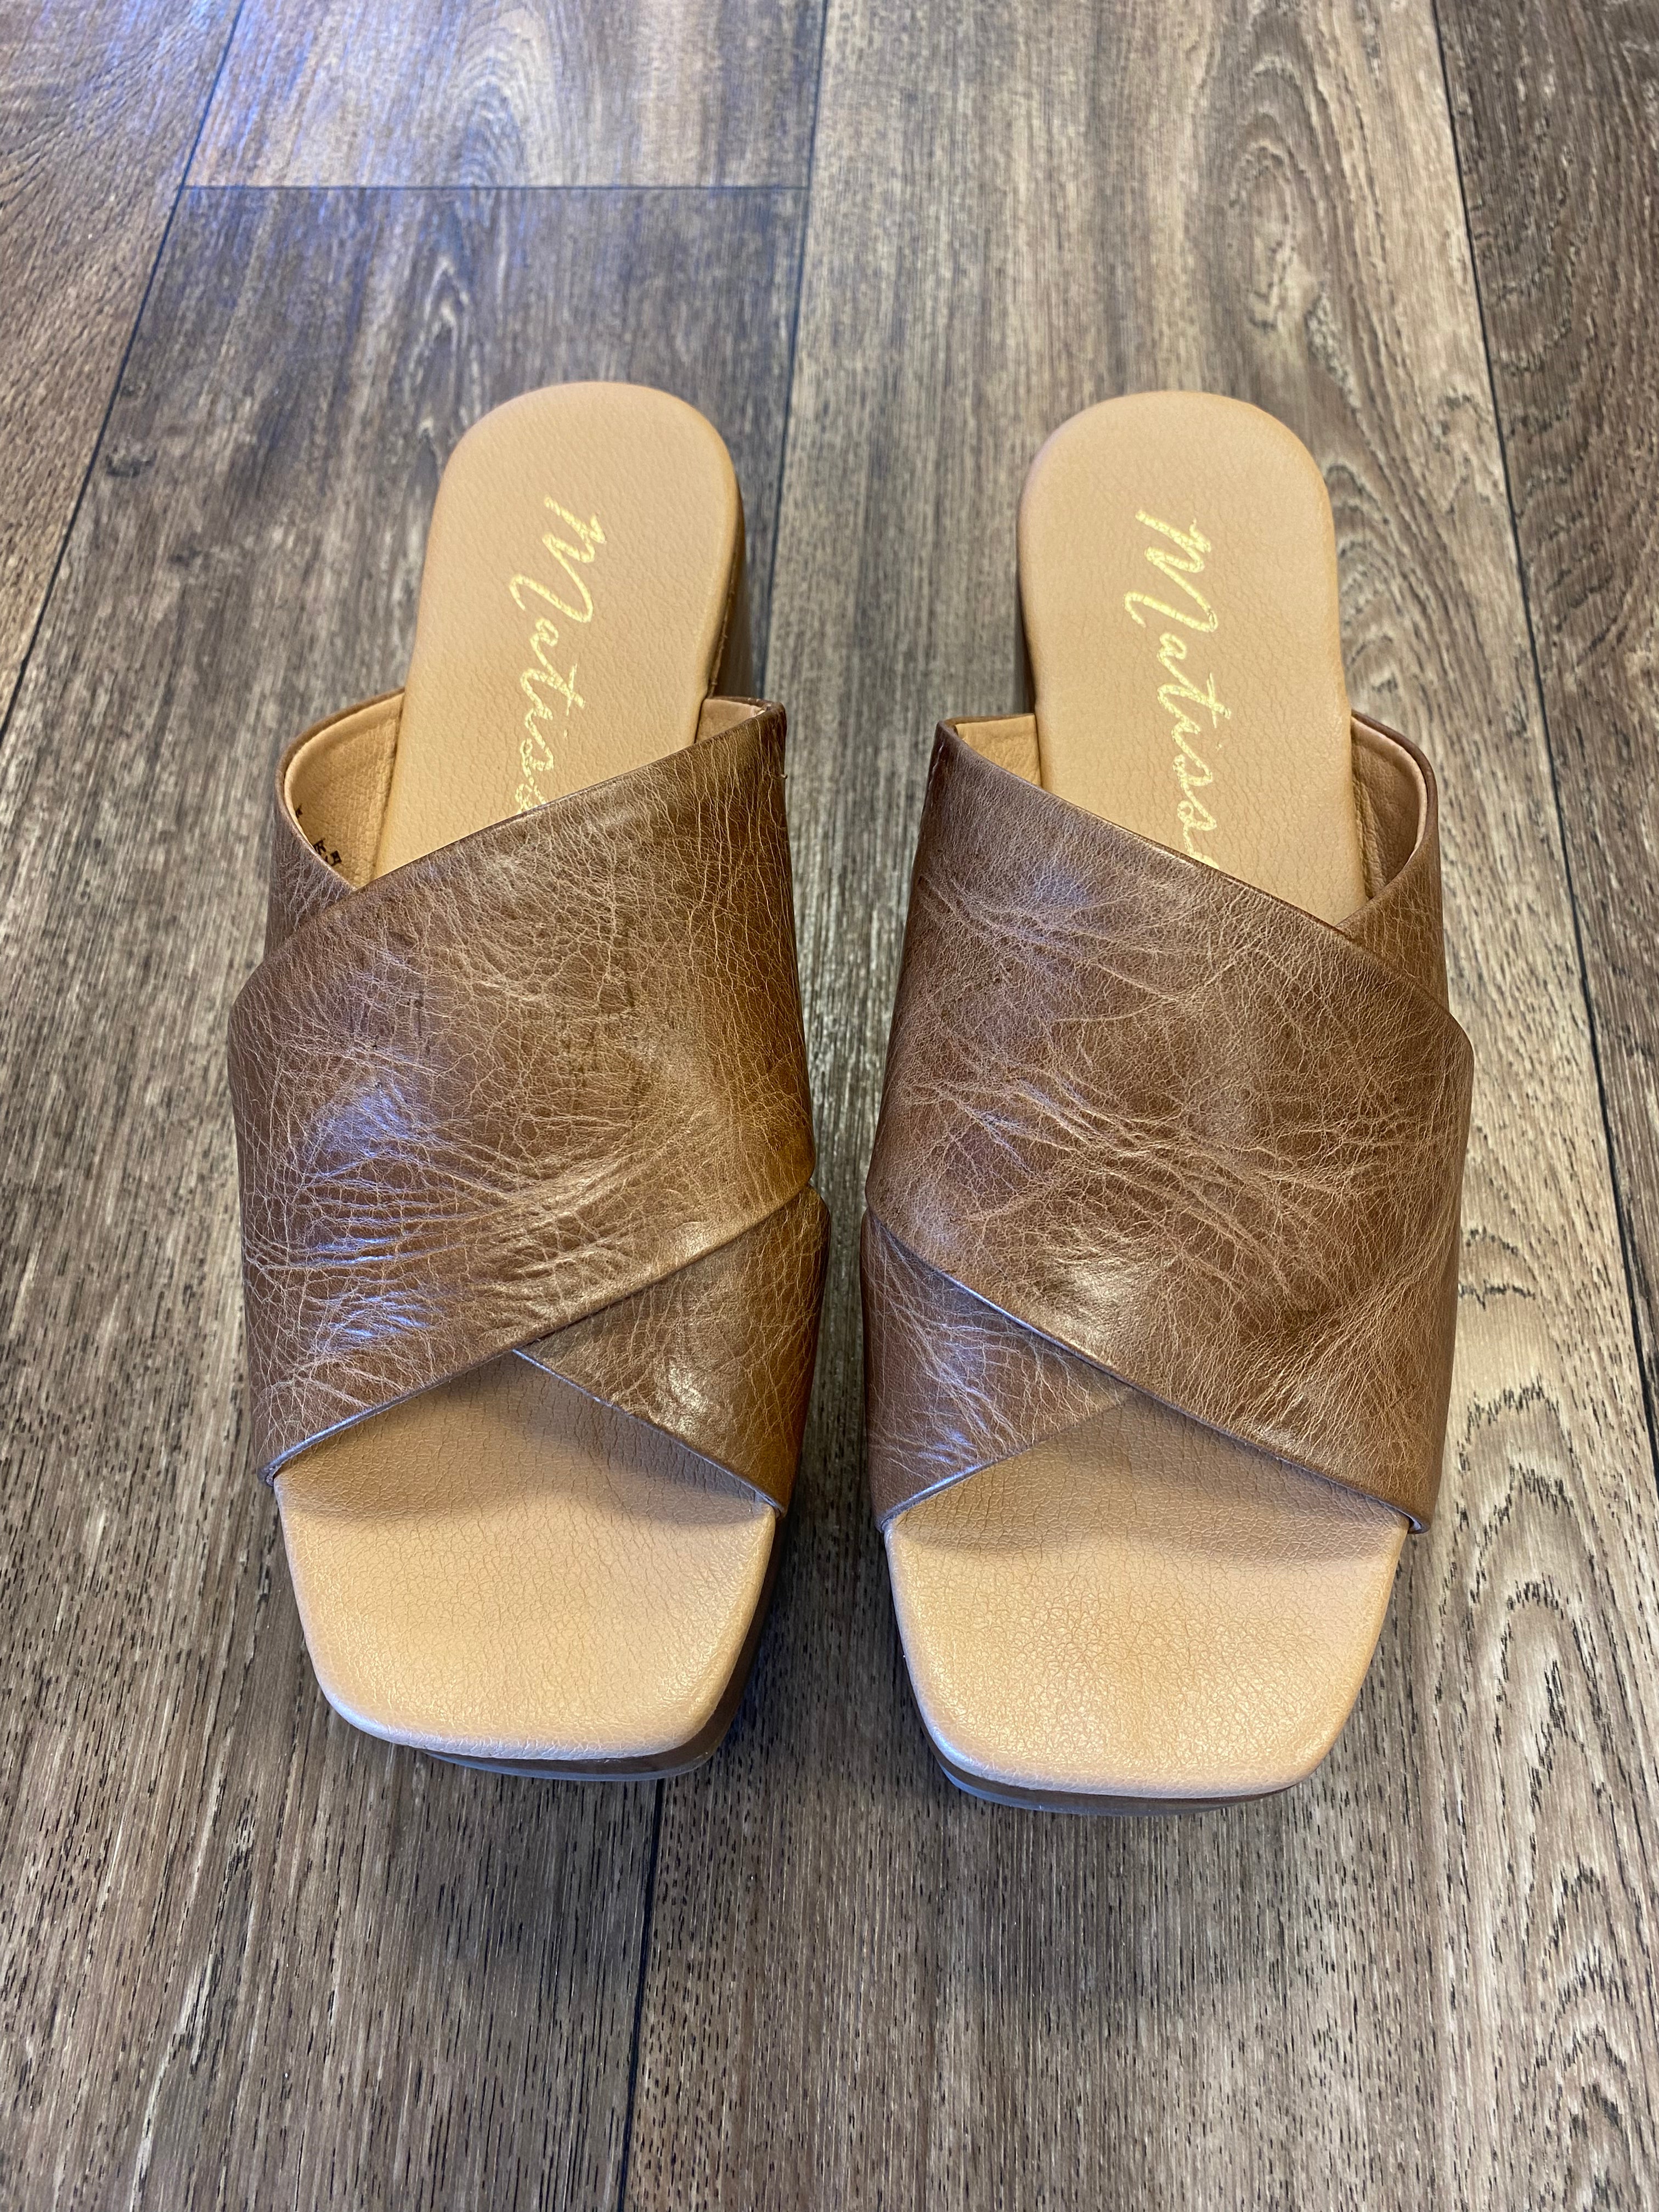 Holden Tan Wedge Sandals